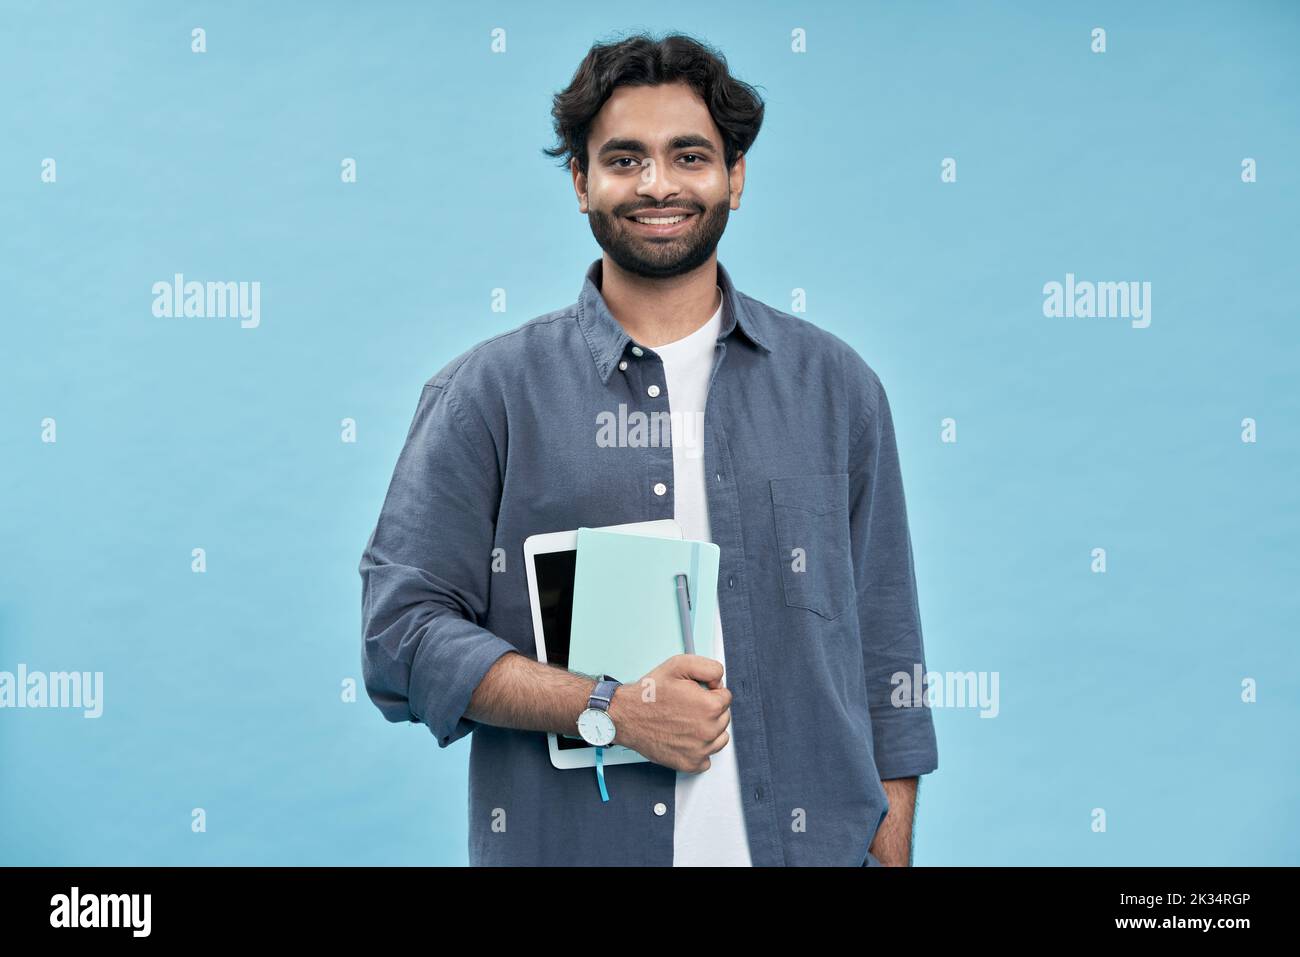 Jeune homme arabe souriant étudiant debout isolé sur fond bleu. Banque D'Images